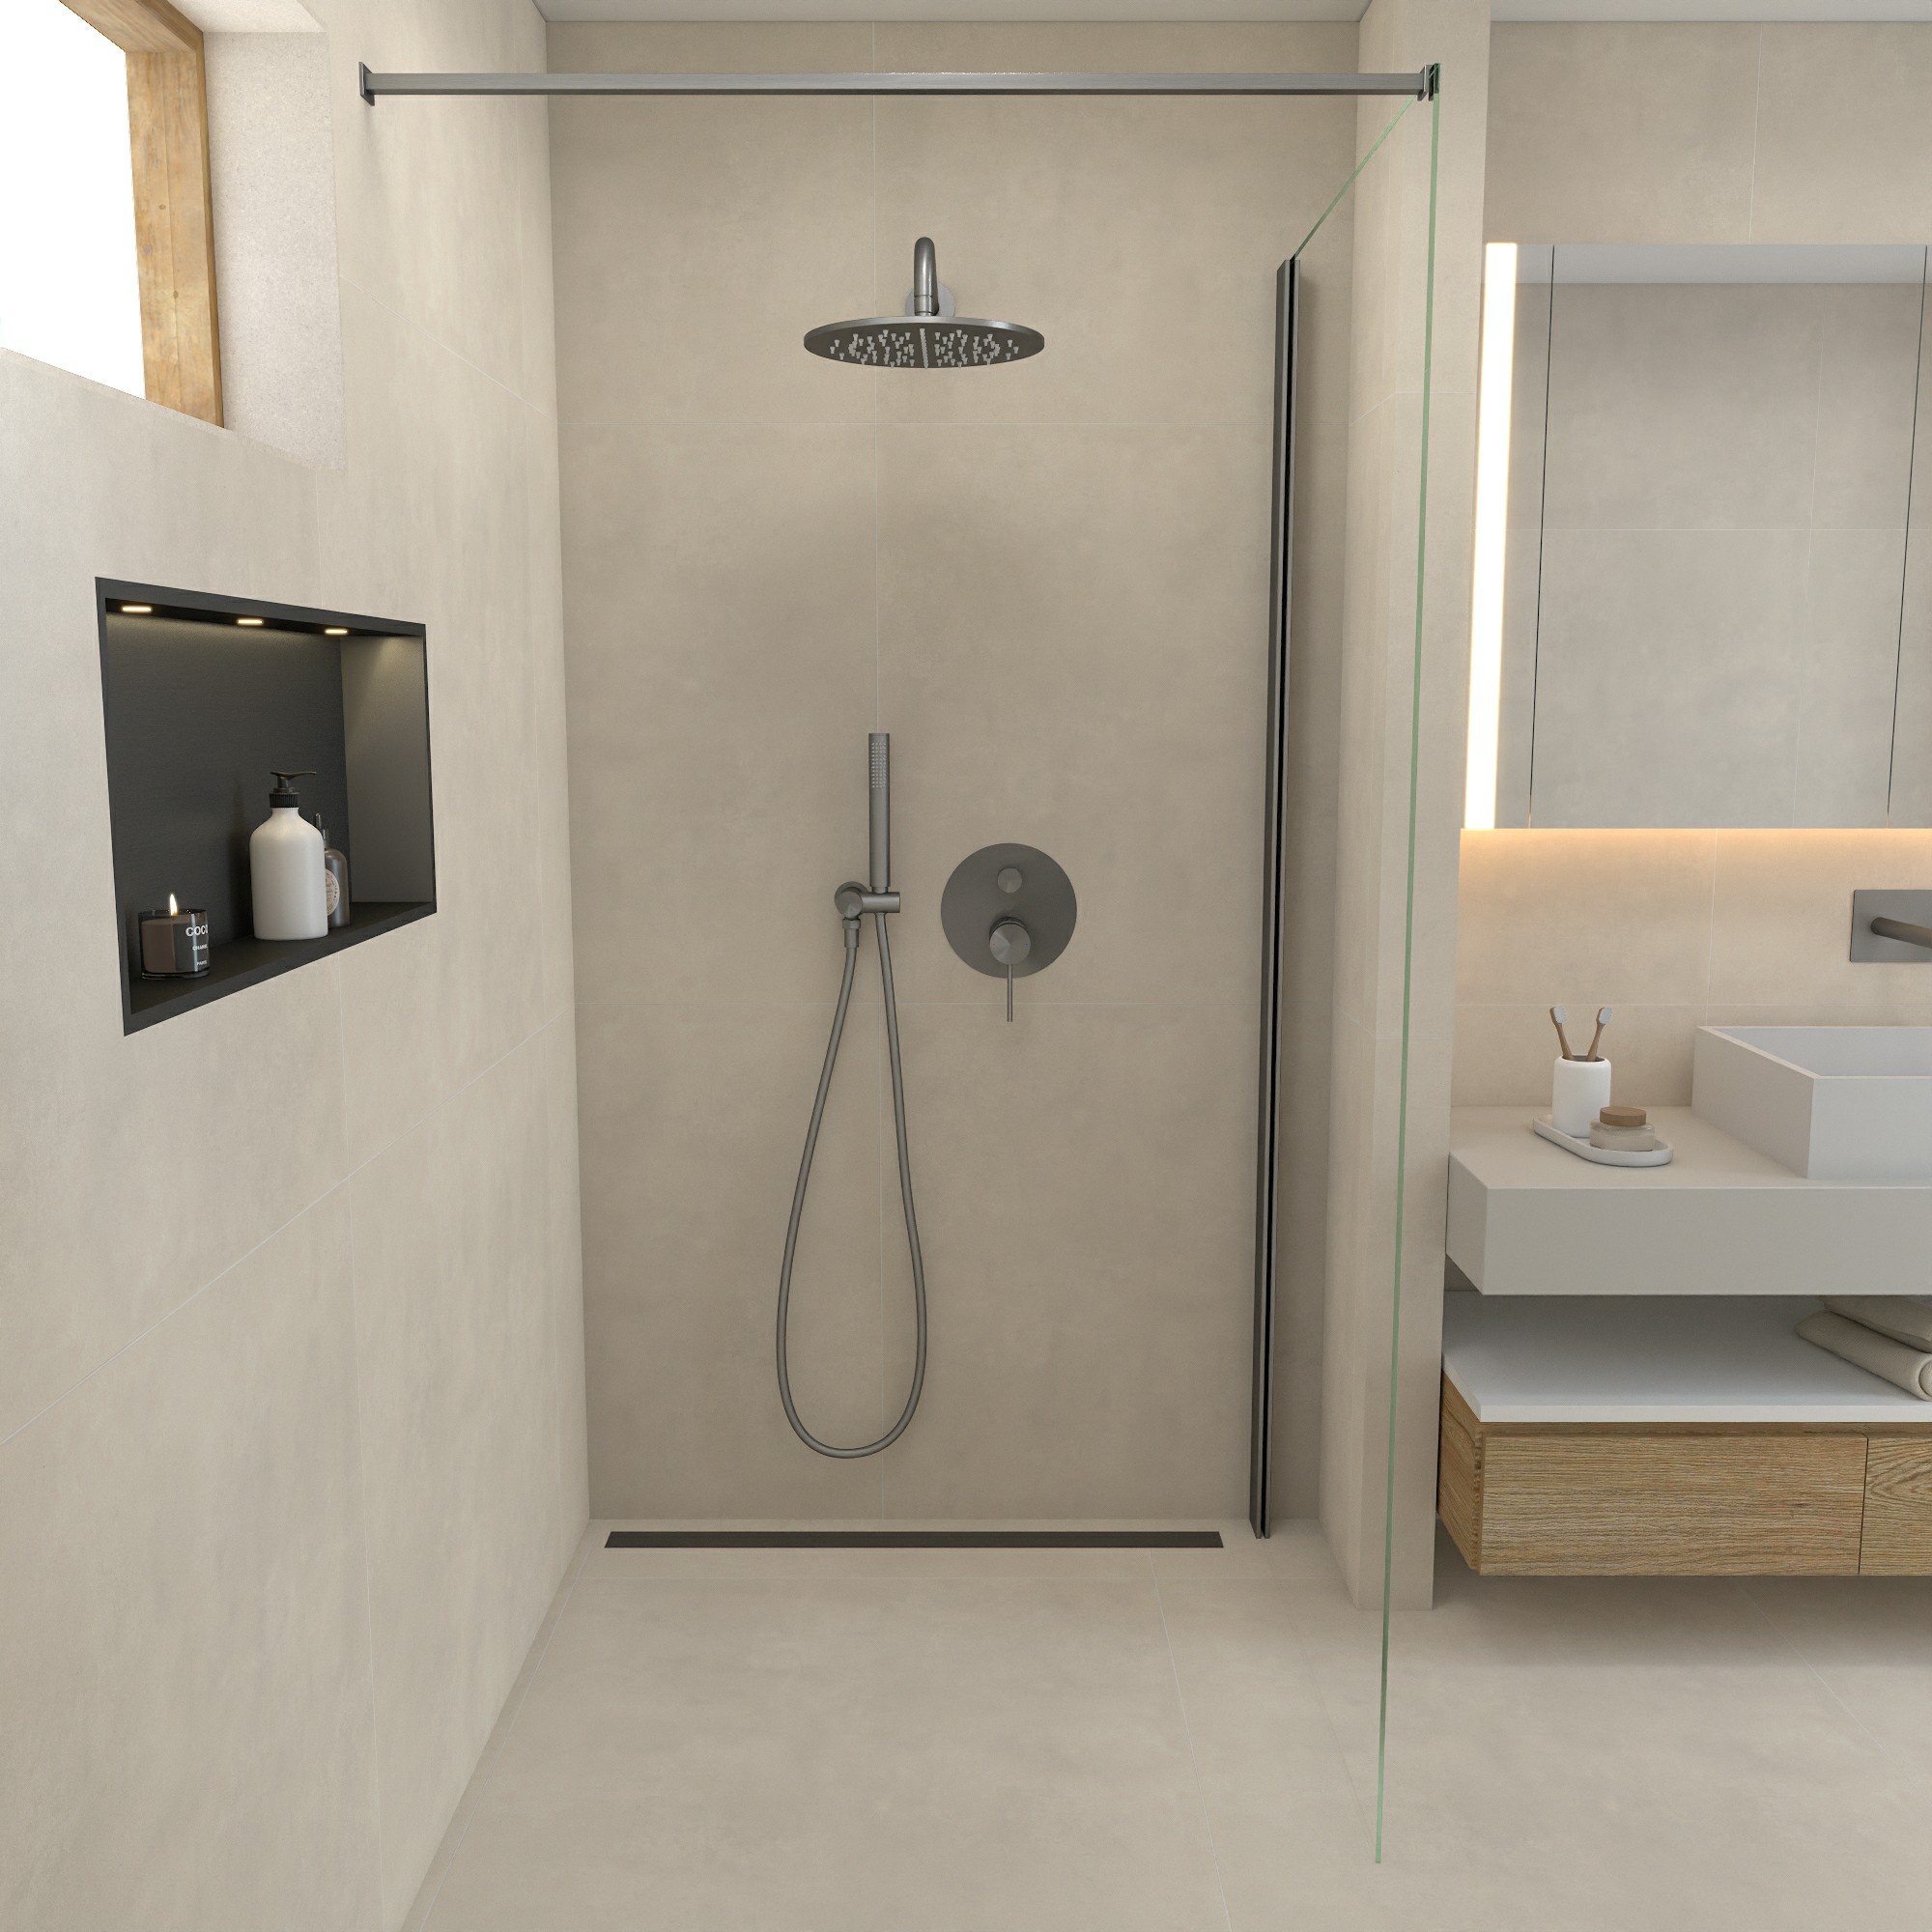 La colonne de douche encastrée : une solution moderne pour votre salle de bains.